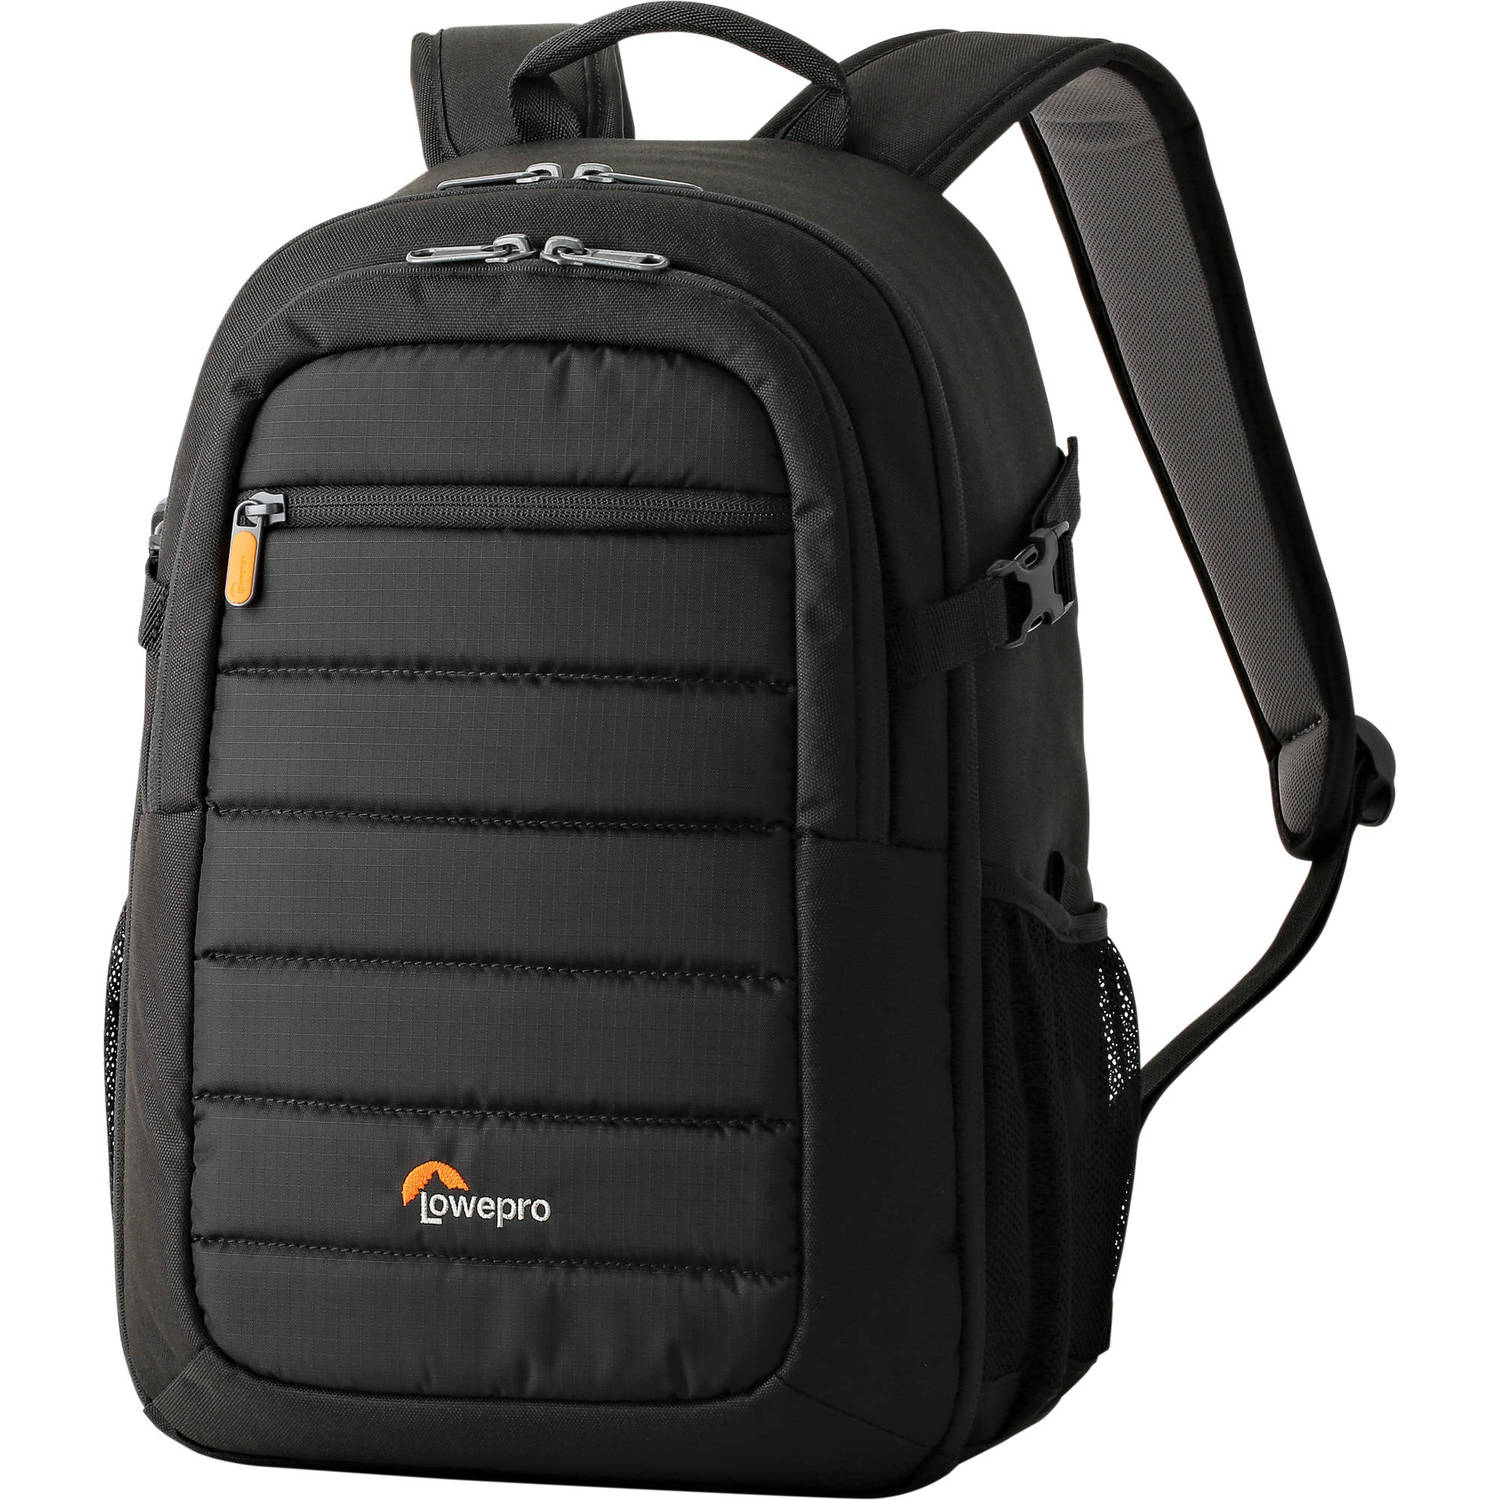 Lowepro Tahoe BP 150 Camera Bag (Black)